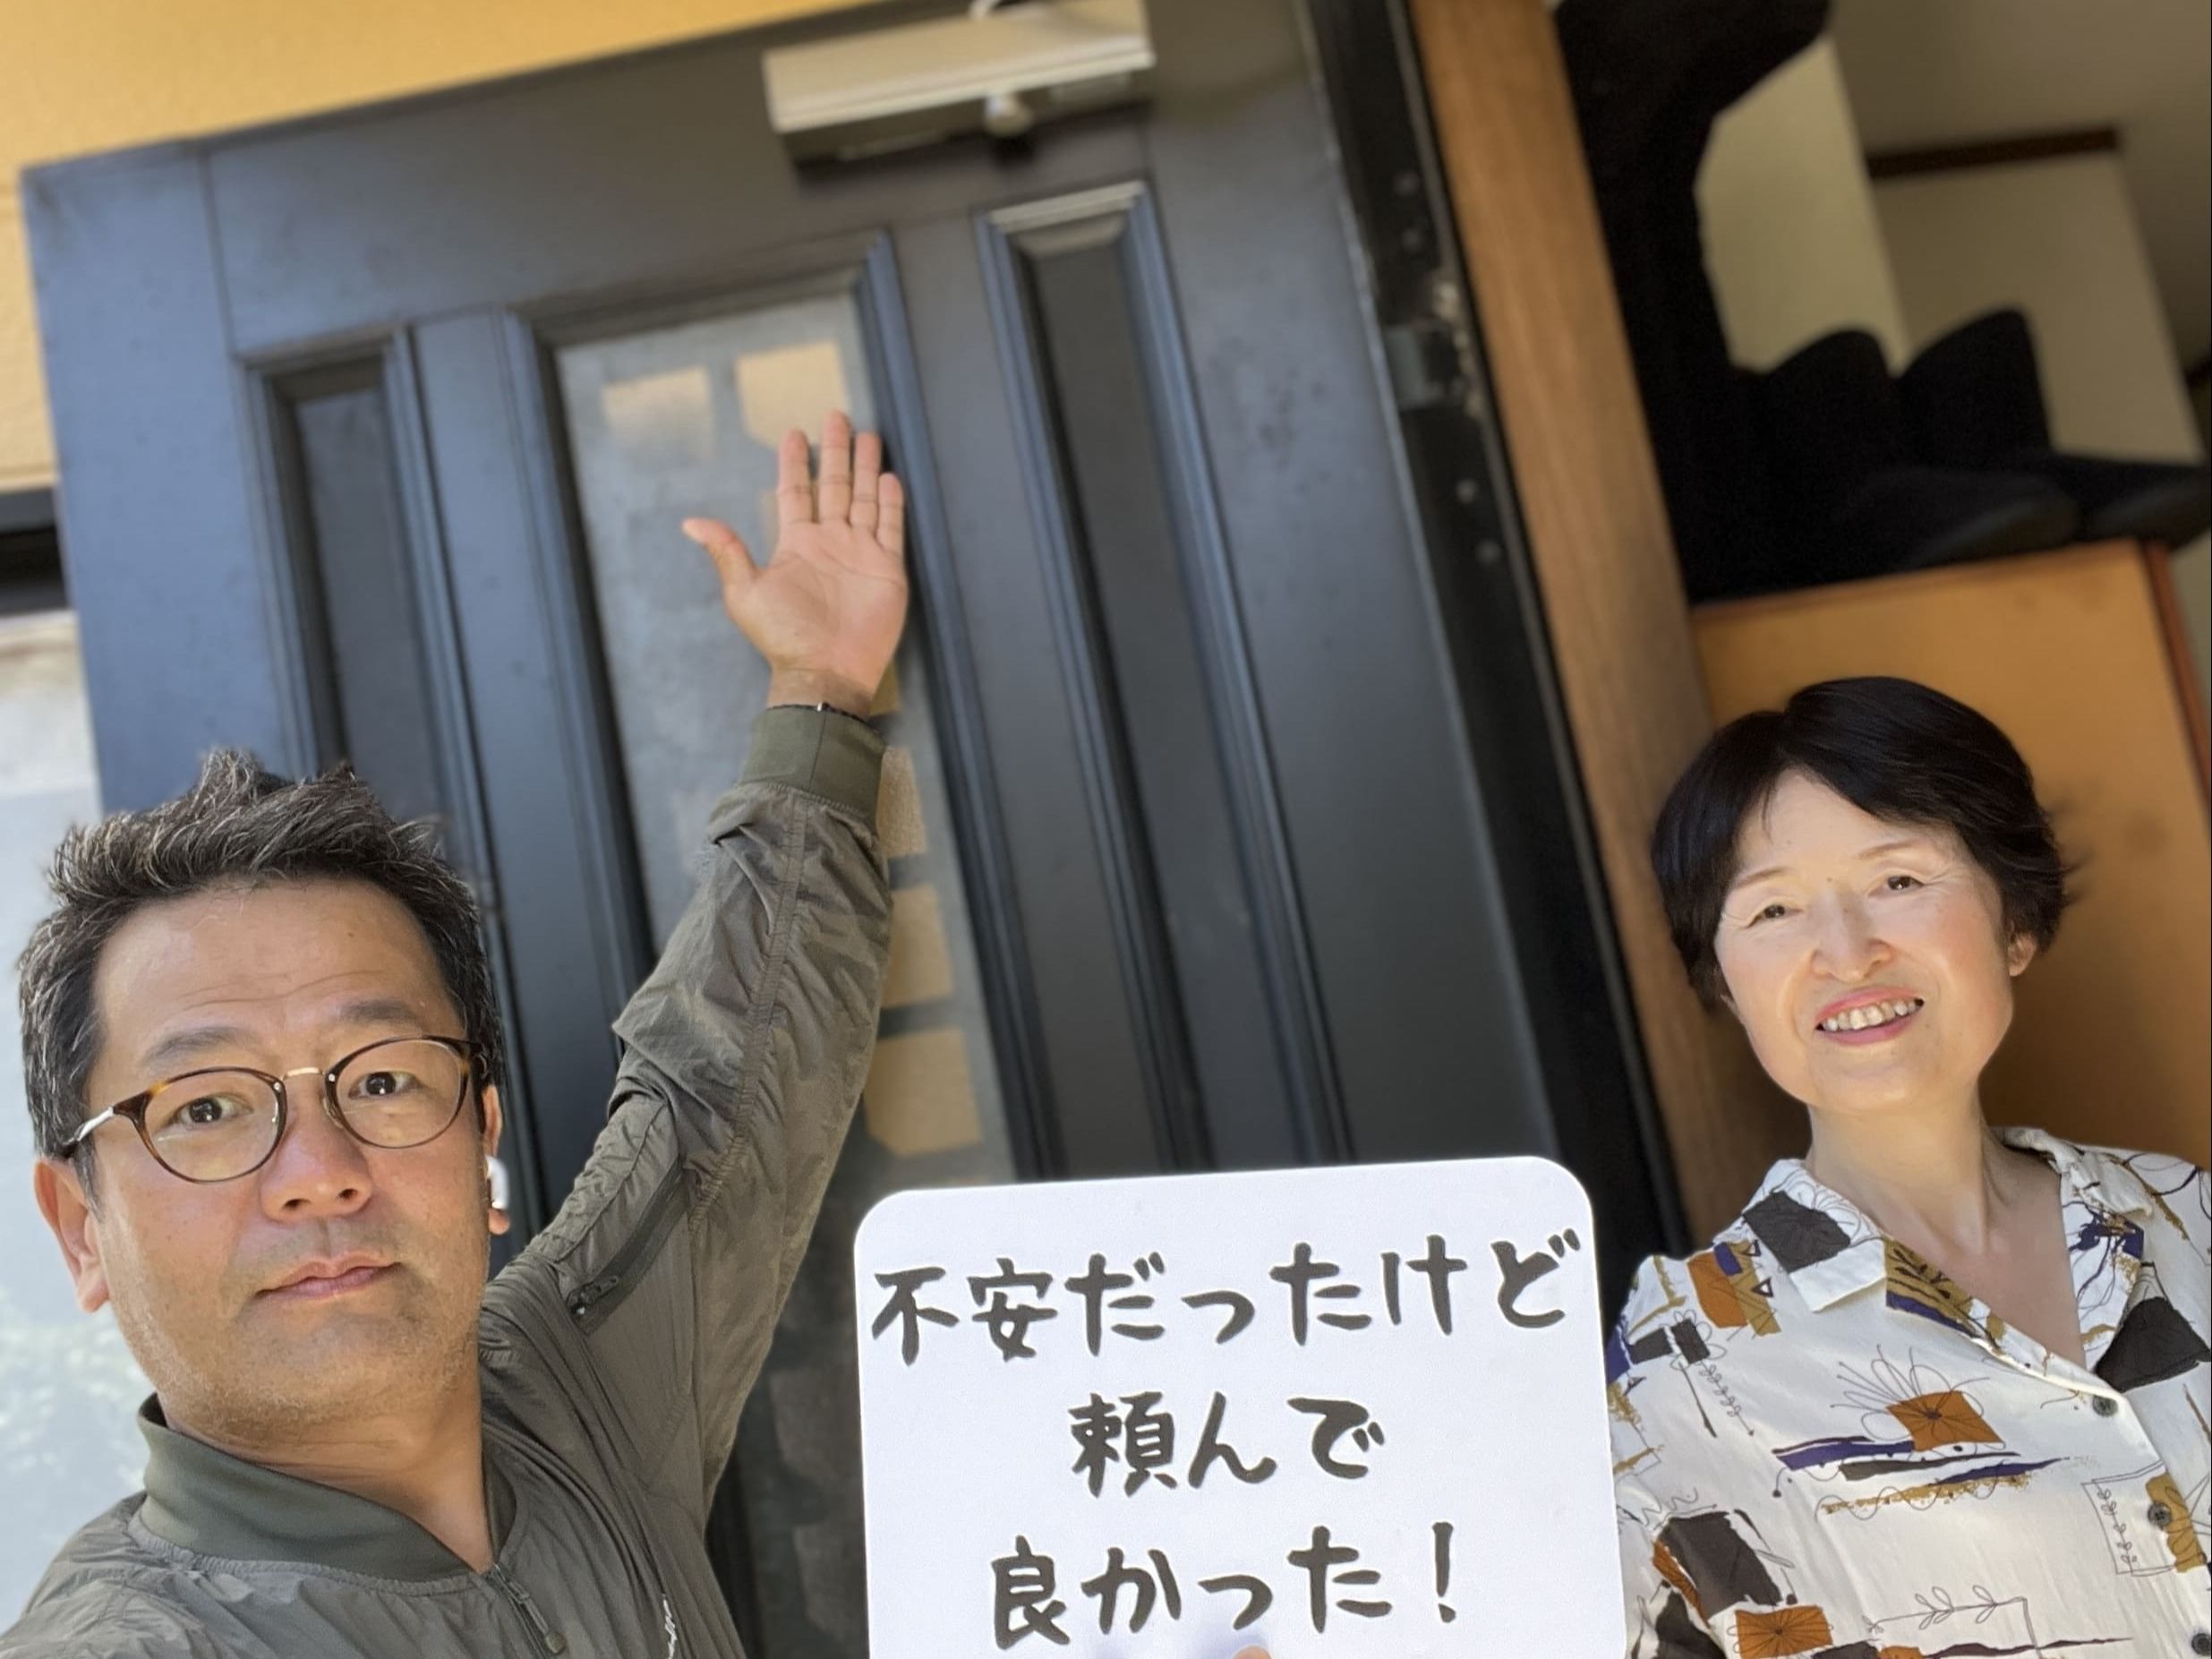 【日野市地域】カギとドア修理コバヤシの店内・外観画像3